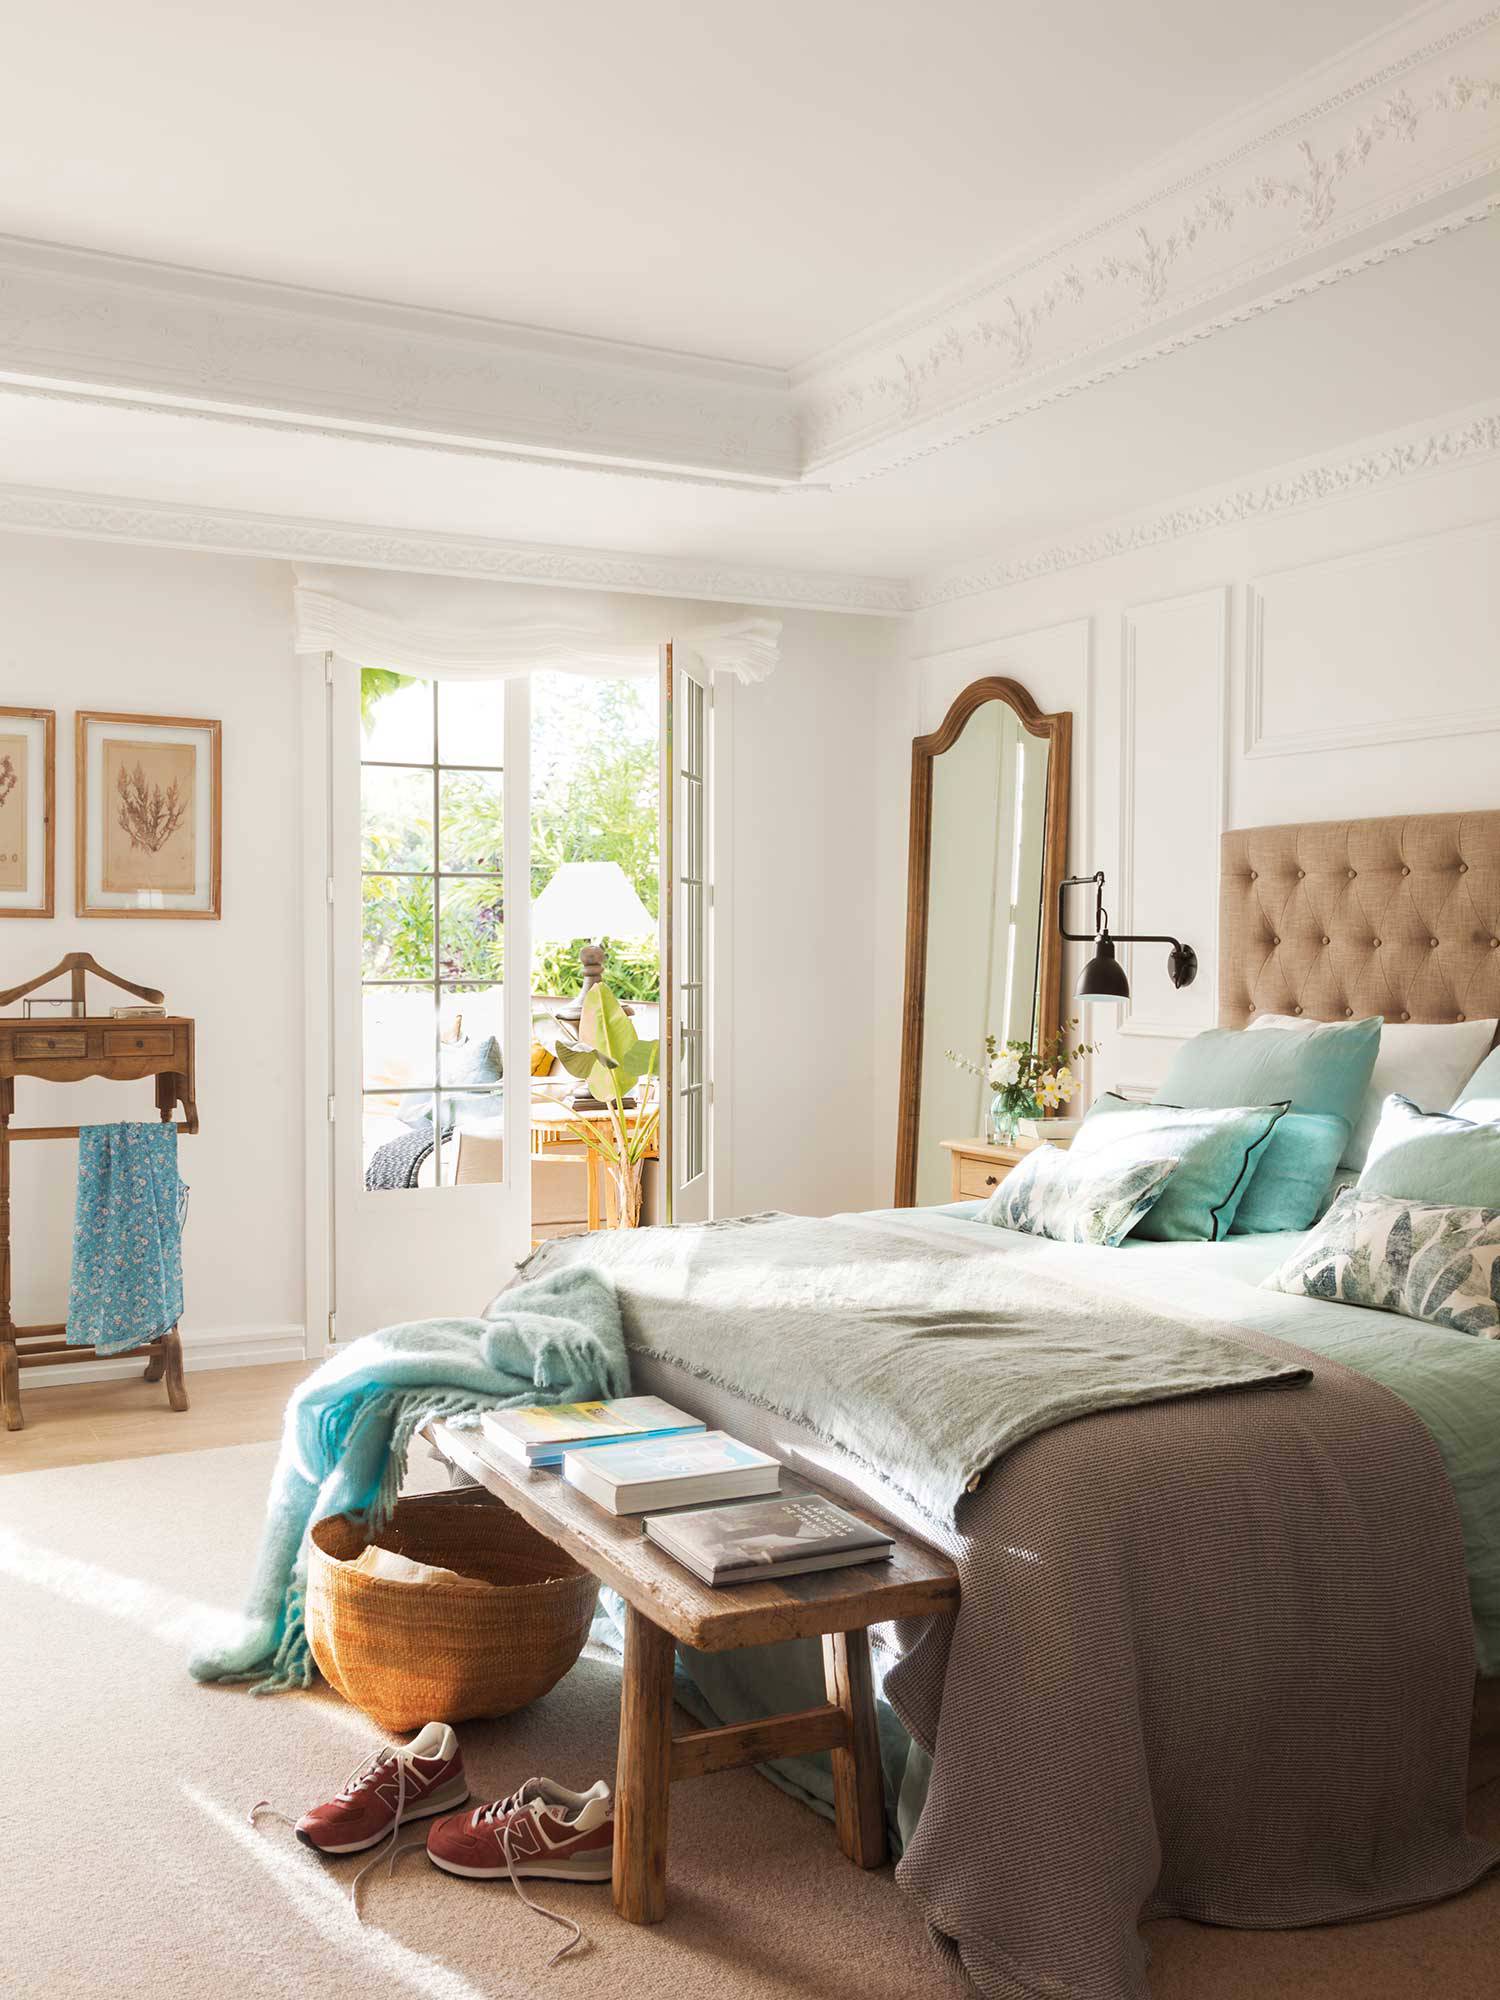 Dormitorio clásico actualizado con cabecero capitoné, banco de madera, galán de noche y espejo con marco de madera.